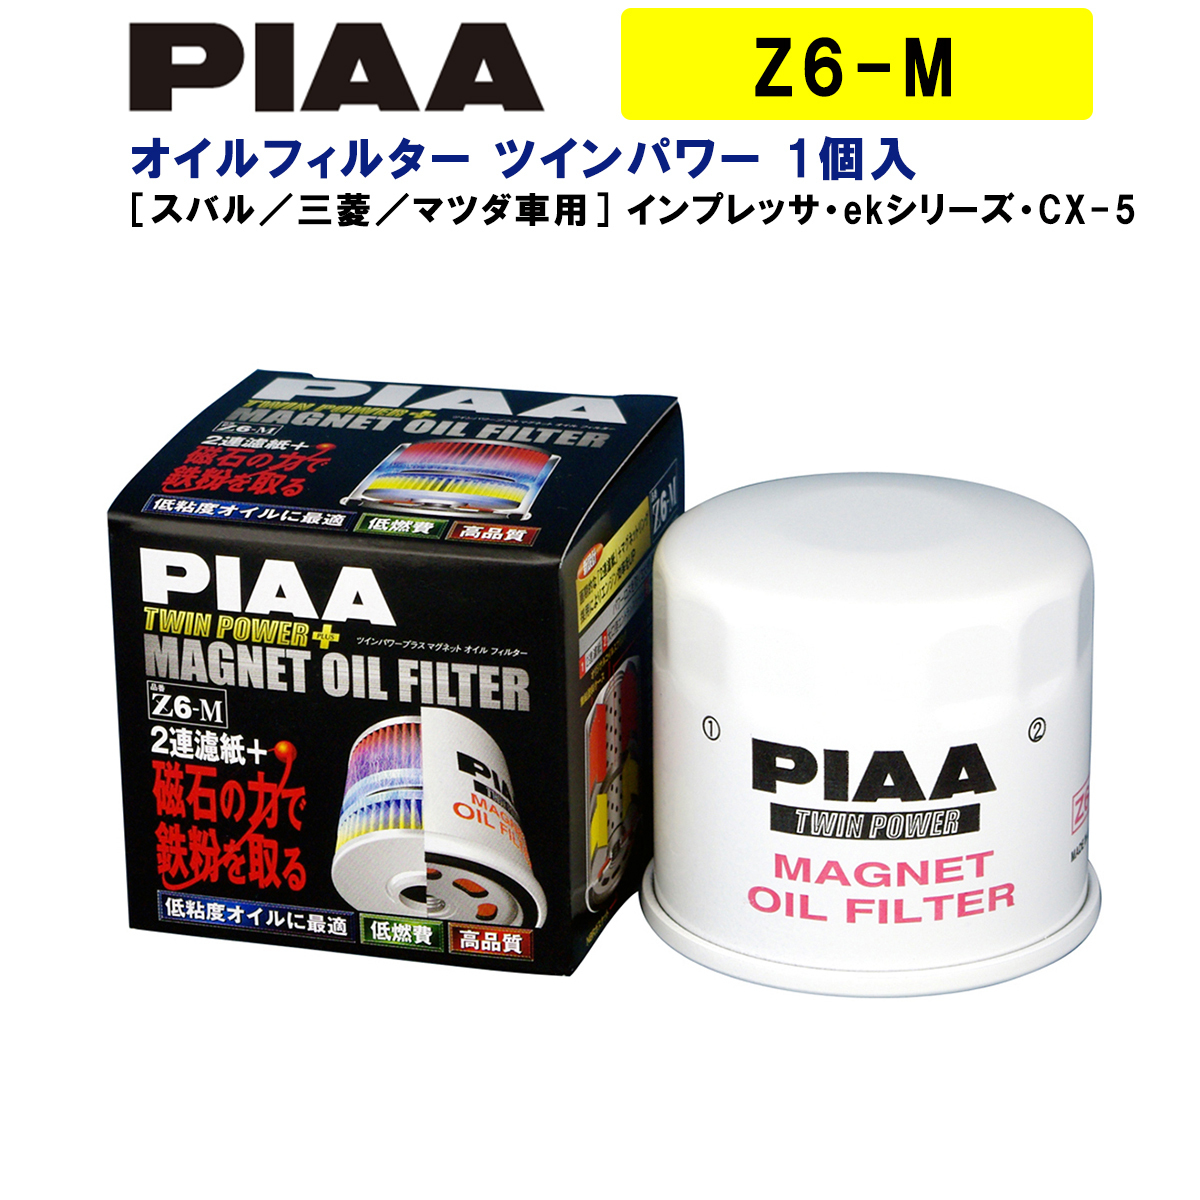 PIAA オイルフィルター ツインパワー+マグネット 1個入 ［スバル／三菱／マツダ車用］ インプレッサ・ekシリーズ・CX-5 他 Z6-M ピア_画像1